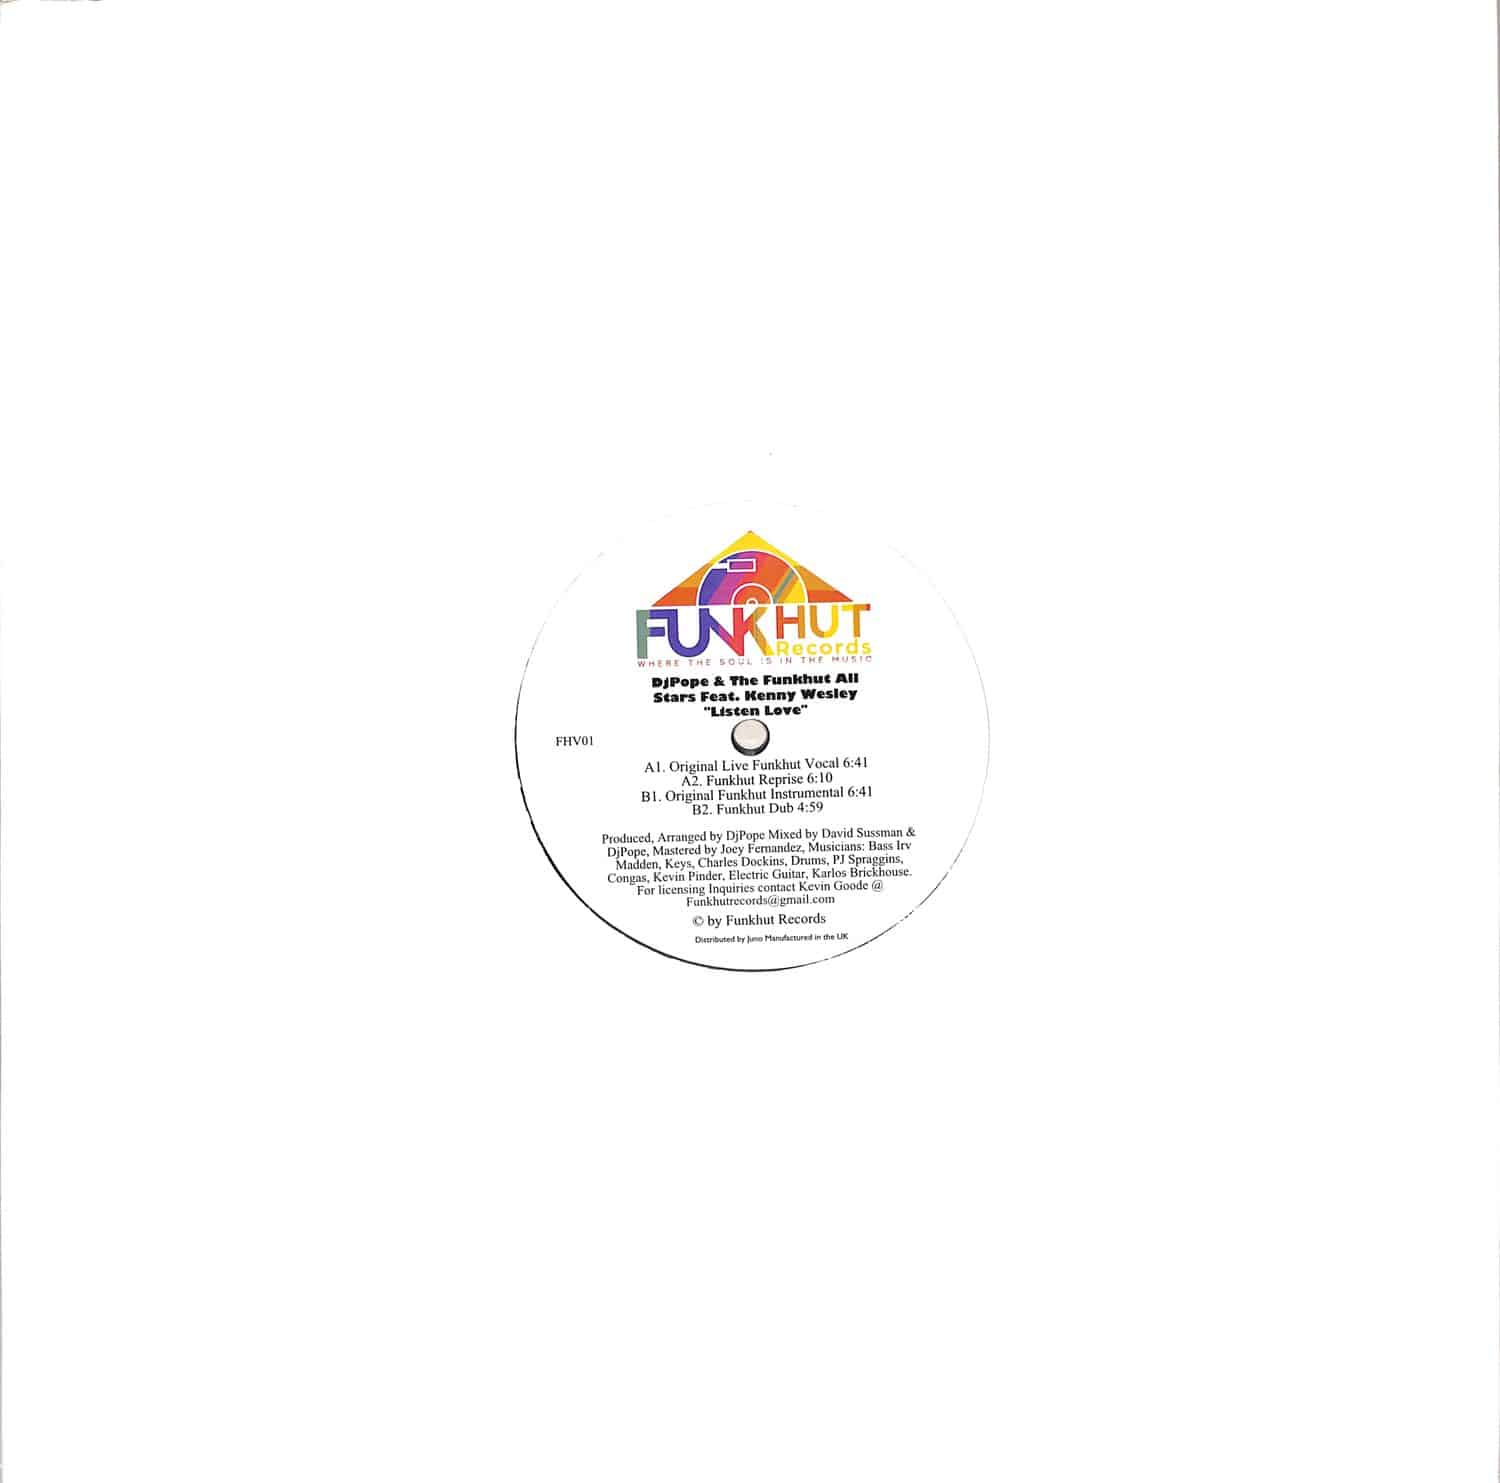 DJPope / The Funkhut All Stars feat Kenny Wesley - LISTEN LOVE